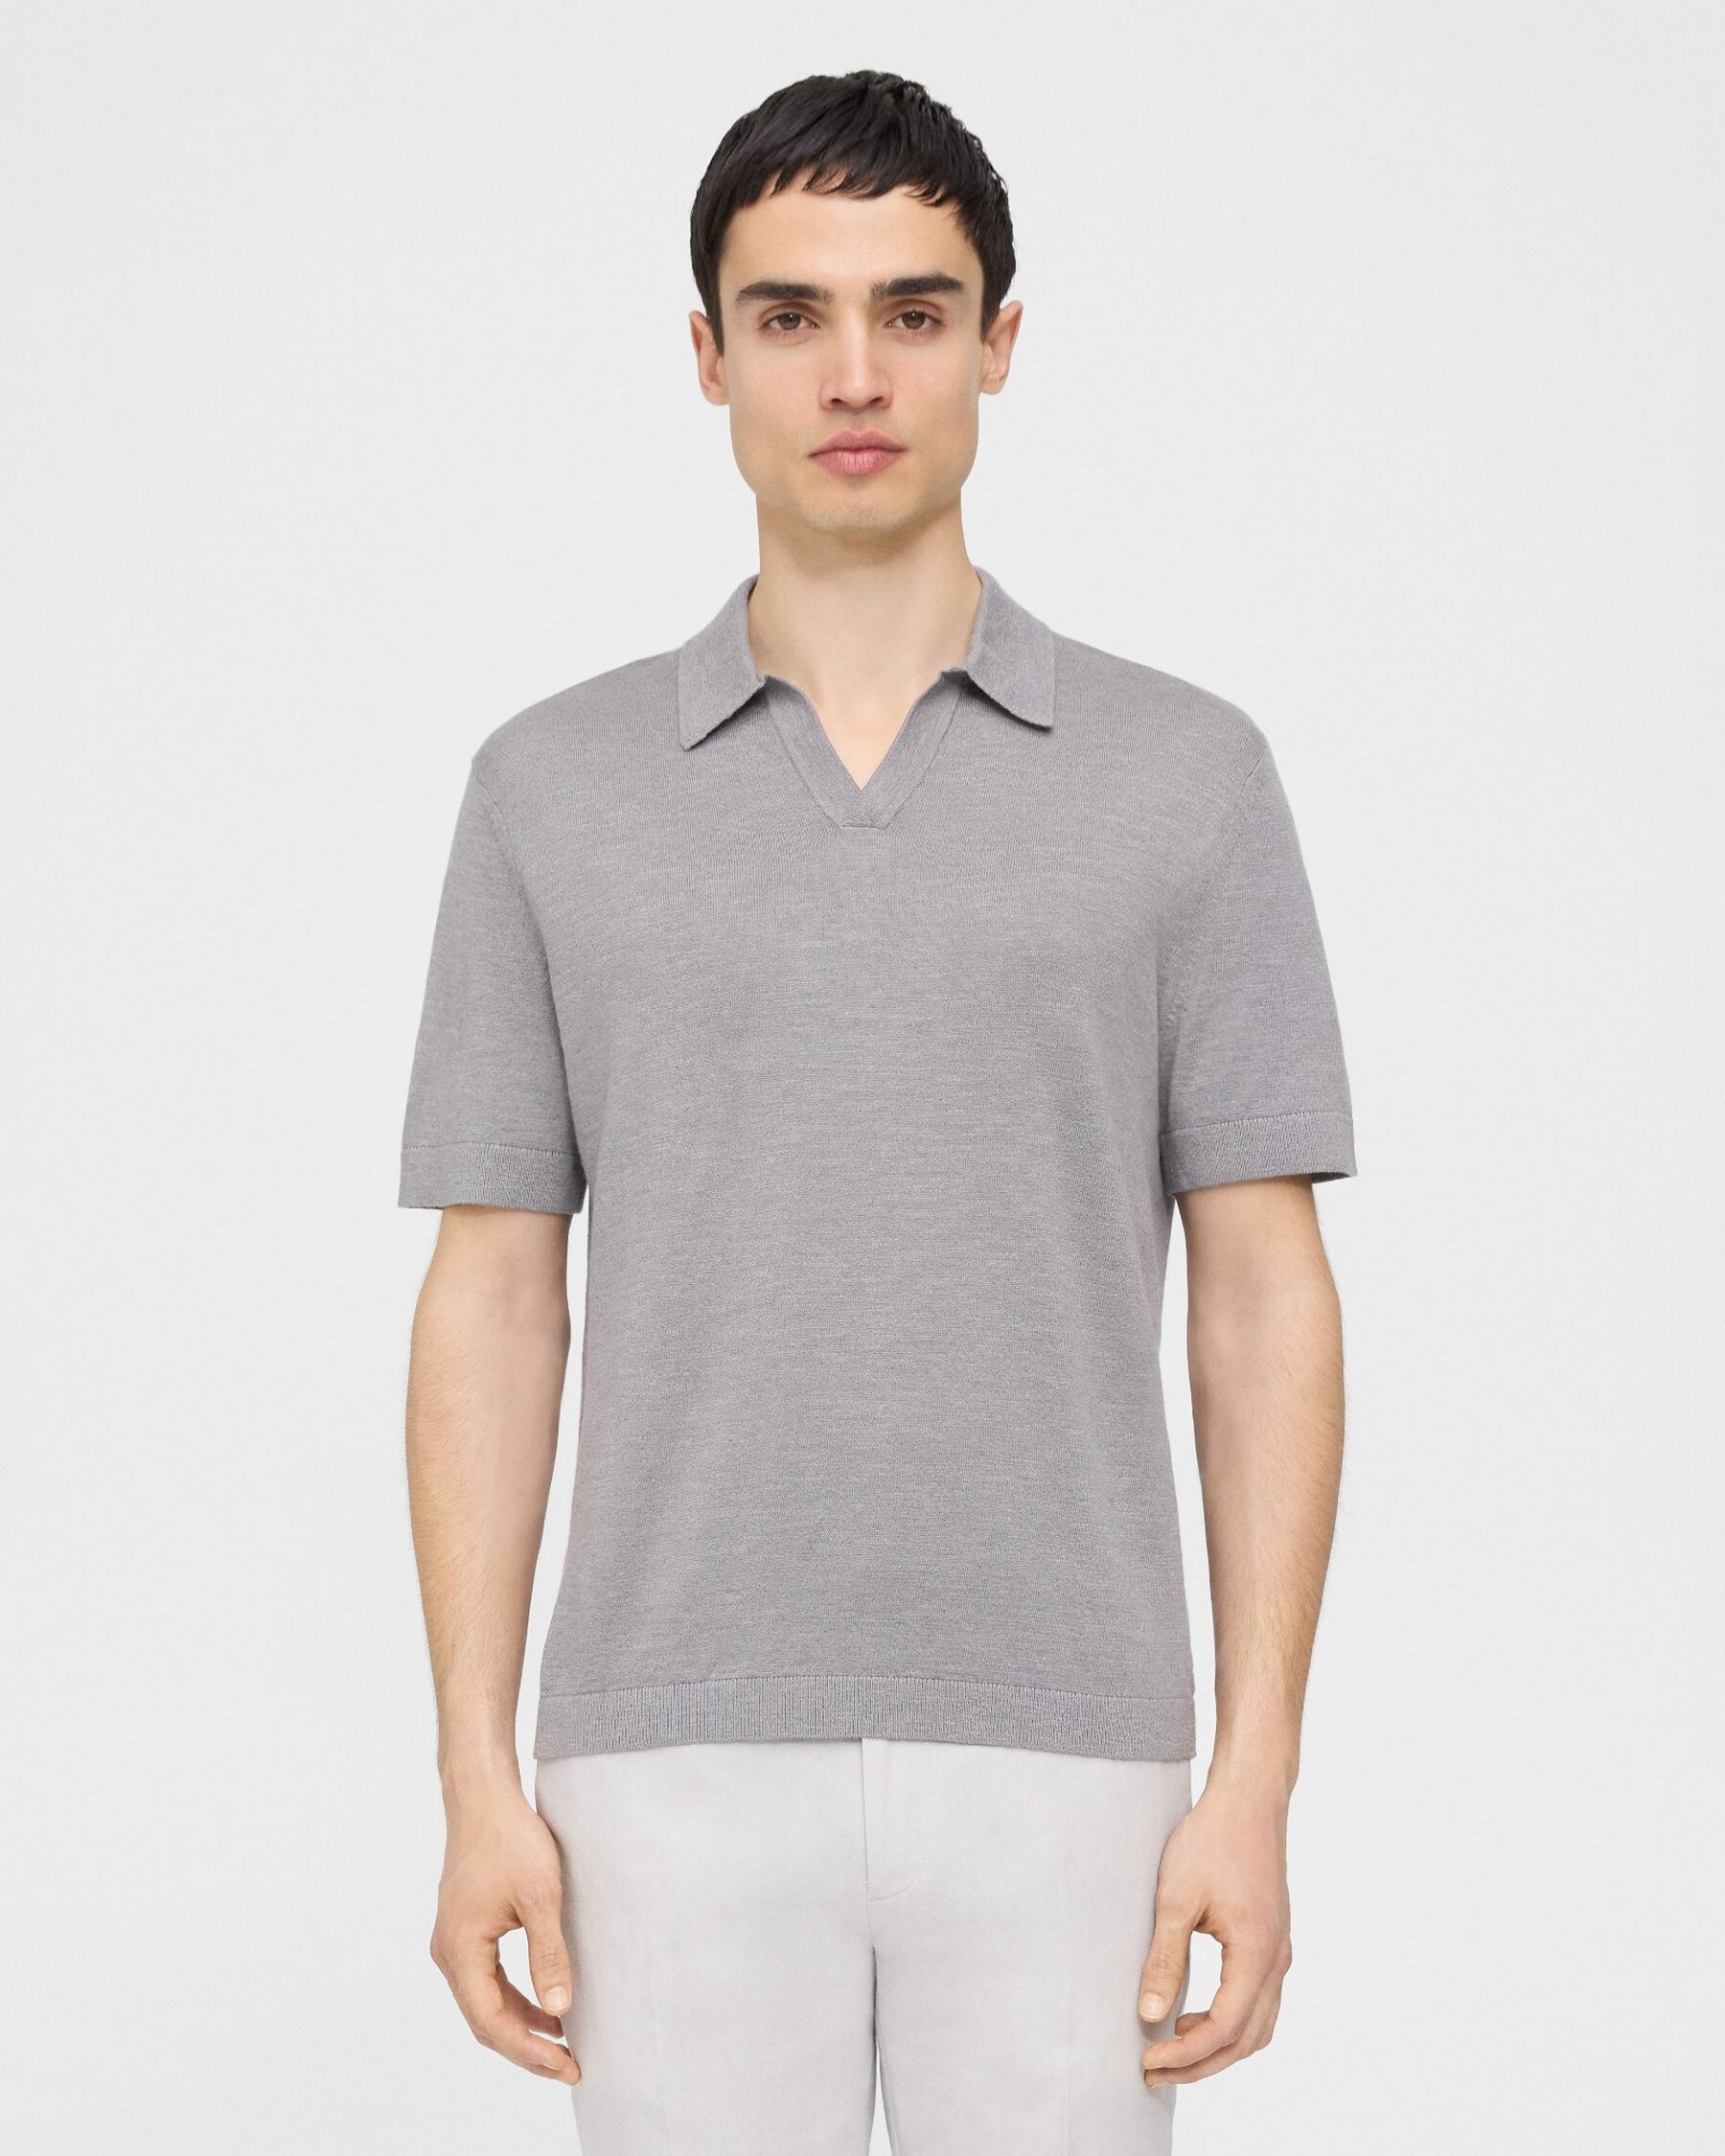 Theory Brenan Polo Shirt in Cotton-Linen